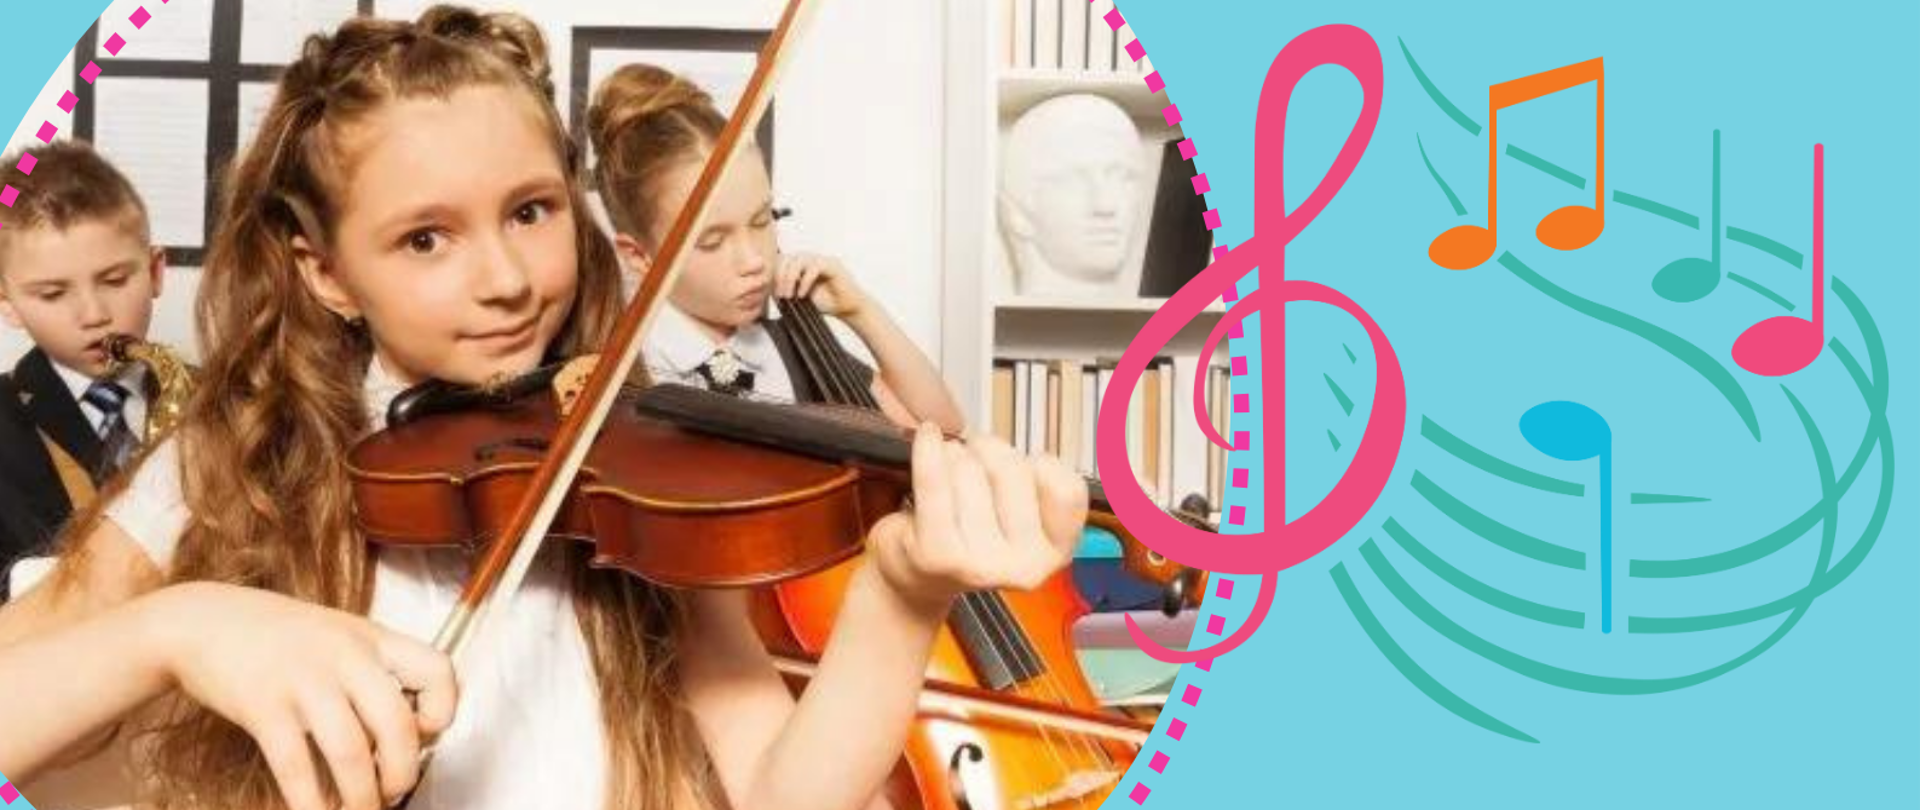 niebieskie tło z dziewczynką grającą na skrzypcach, wypisane korzyści z nauki w szkole muzycznej